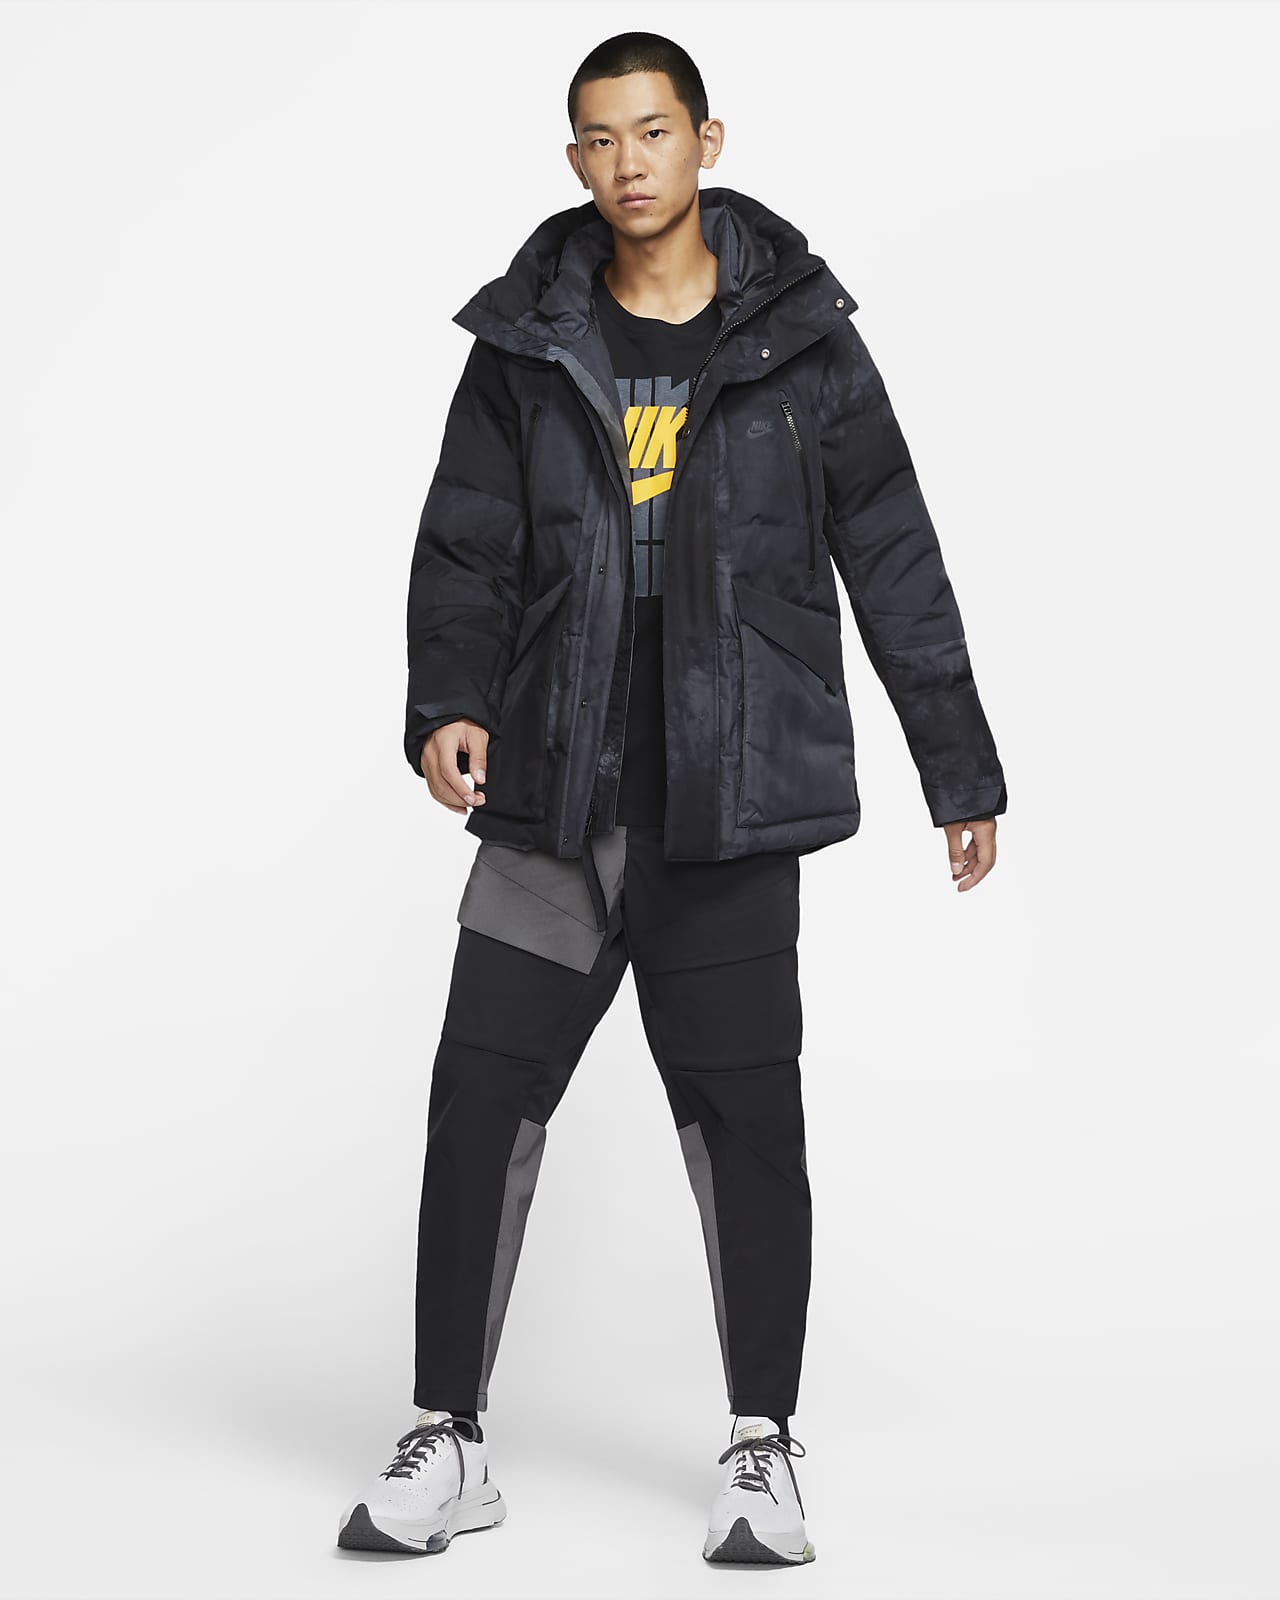 Nike Sportswear Storm-FIT City Series Men's Hooded Jacket. Nike.com